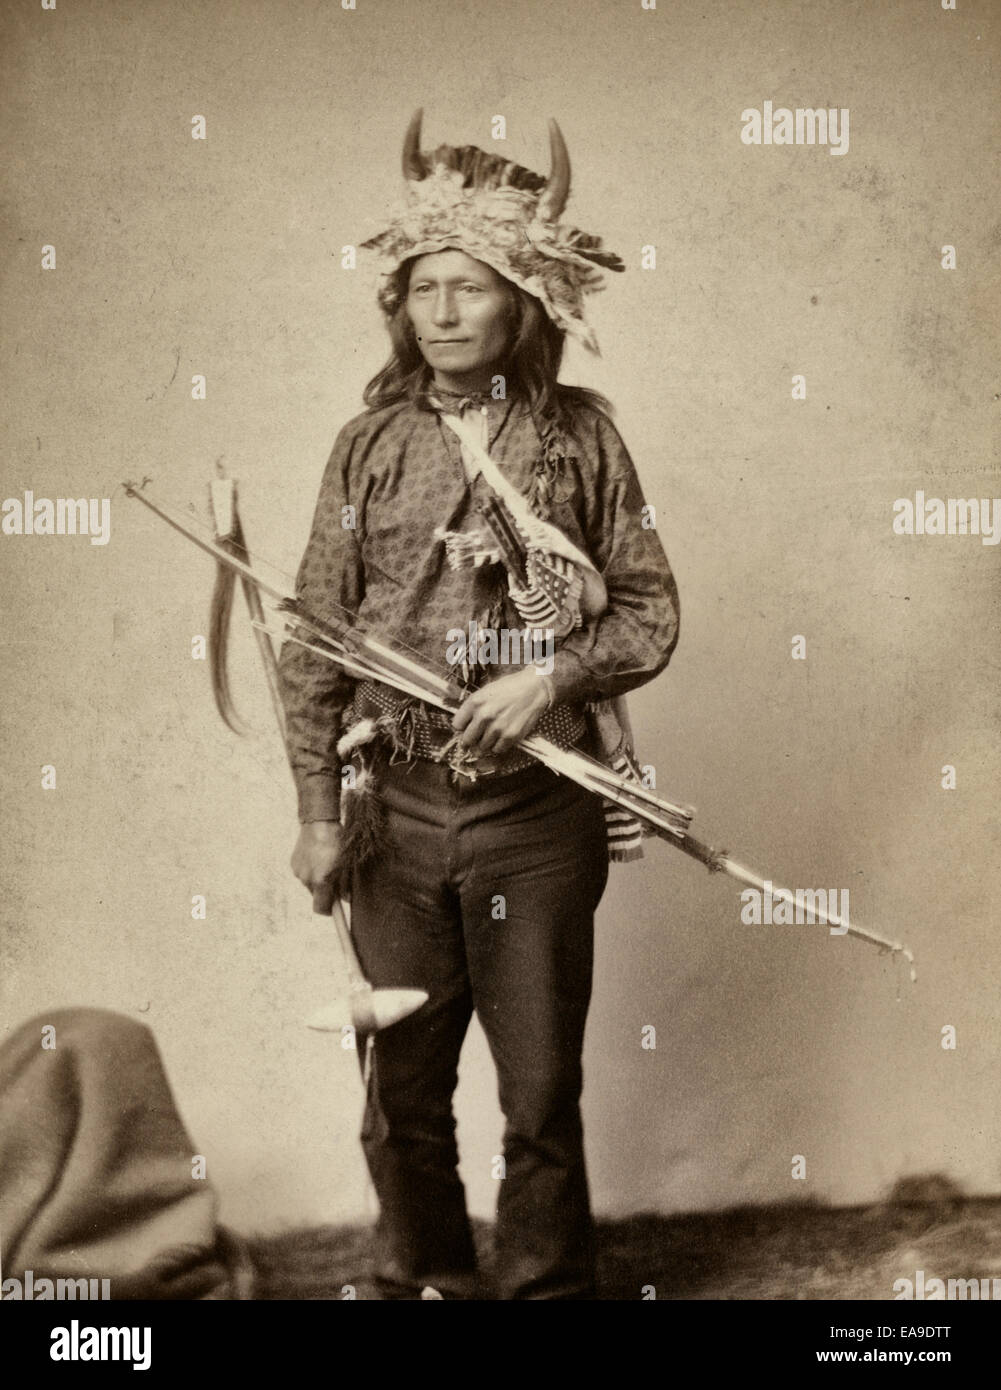 'Petite', instigateur de la révolte des indiens à Pine Ridge, 1890. Peu d'Oglala, leader du groupe, portrait studio, debout, face à l'avant, portant une coiffe de l'avertisseur sonore, pantalon et chemise, et la tenue d'arc, de flèches et de tomahawk Banque D'Images